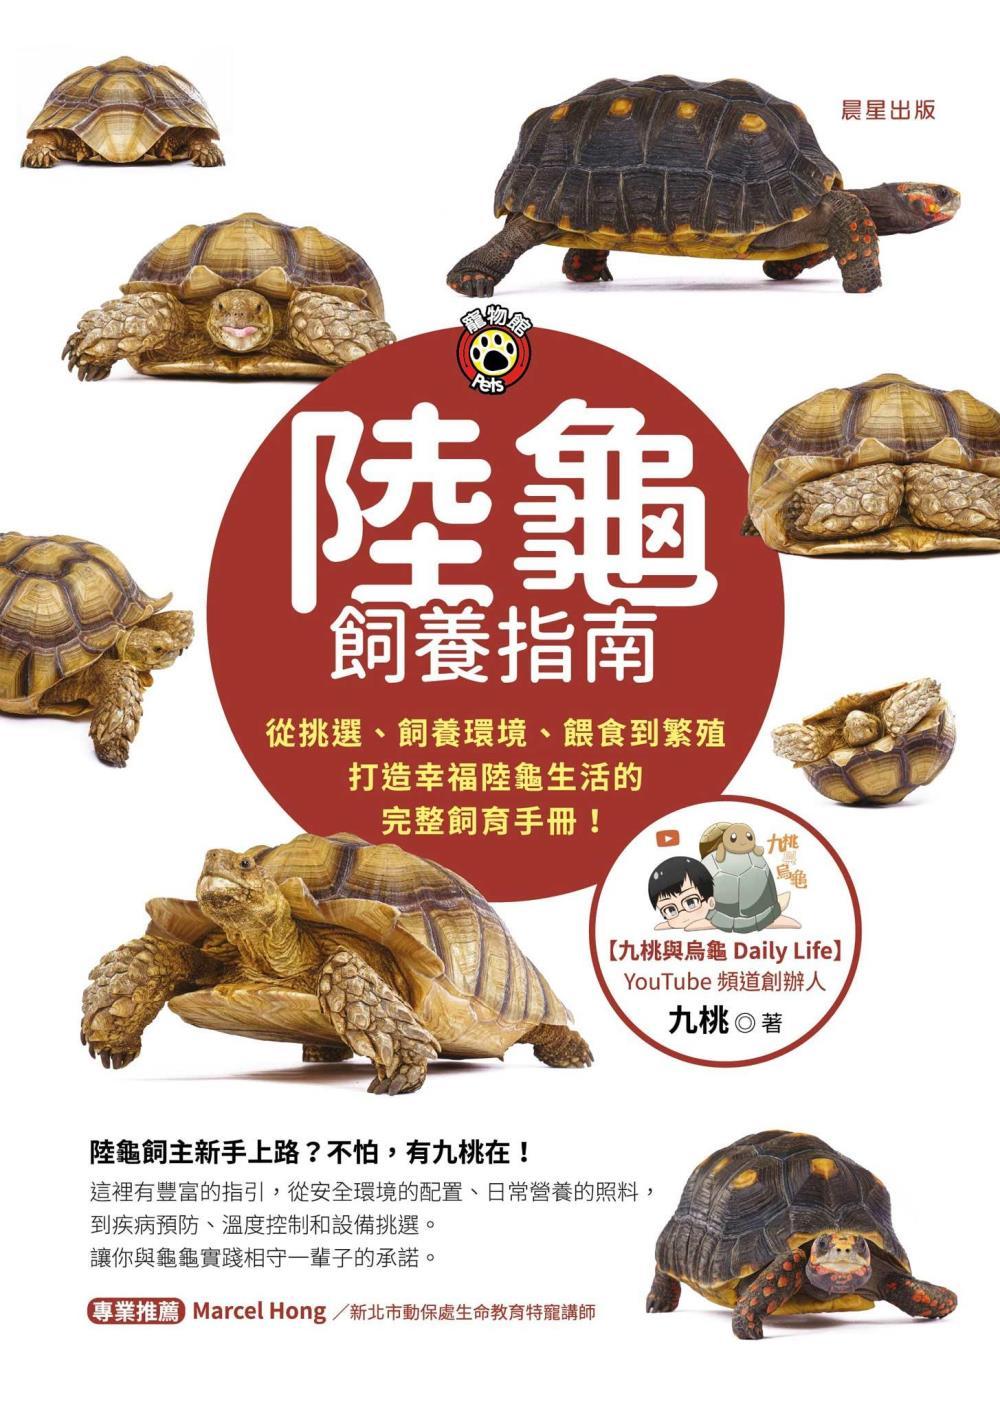 陸龜飼養指南-從挑選、飼養環境、餵食到繁殖，打造幸福陸龜生活的完整飼育手冊! 